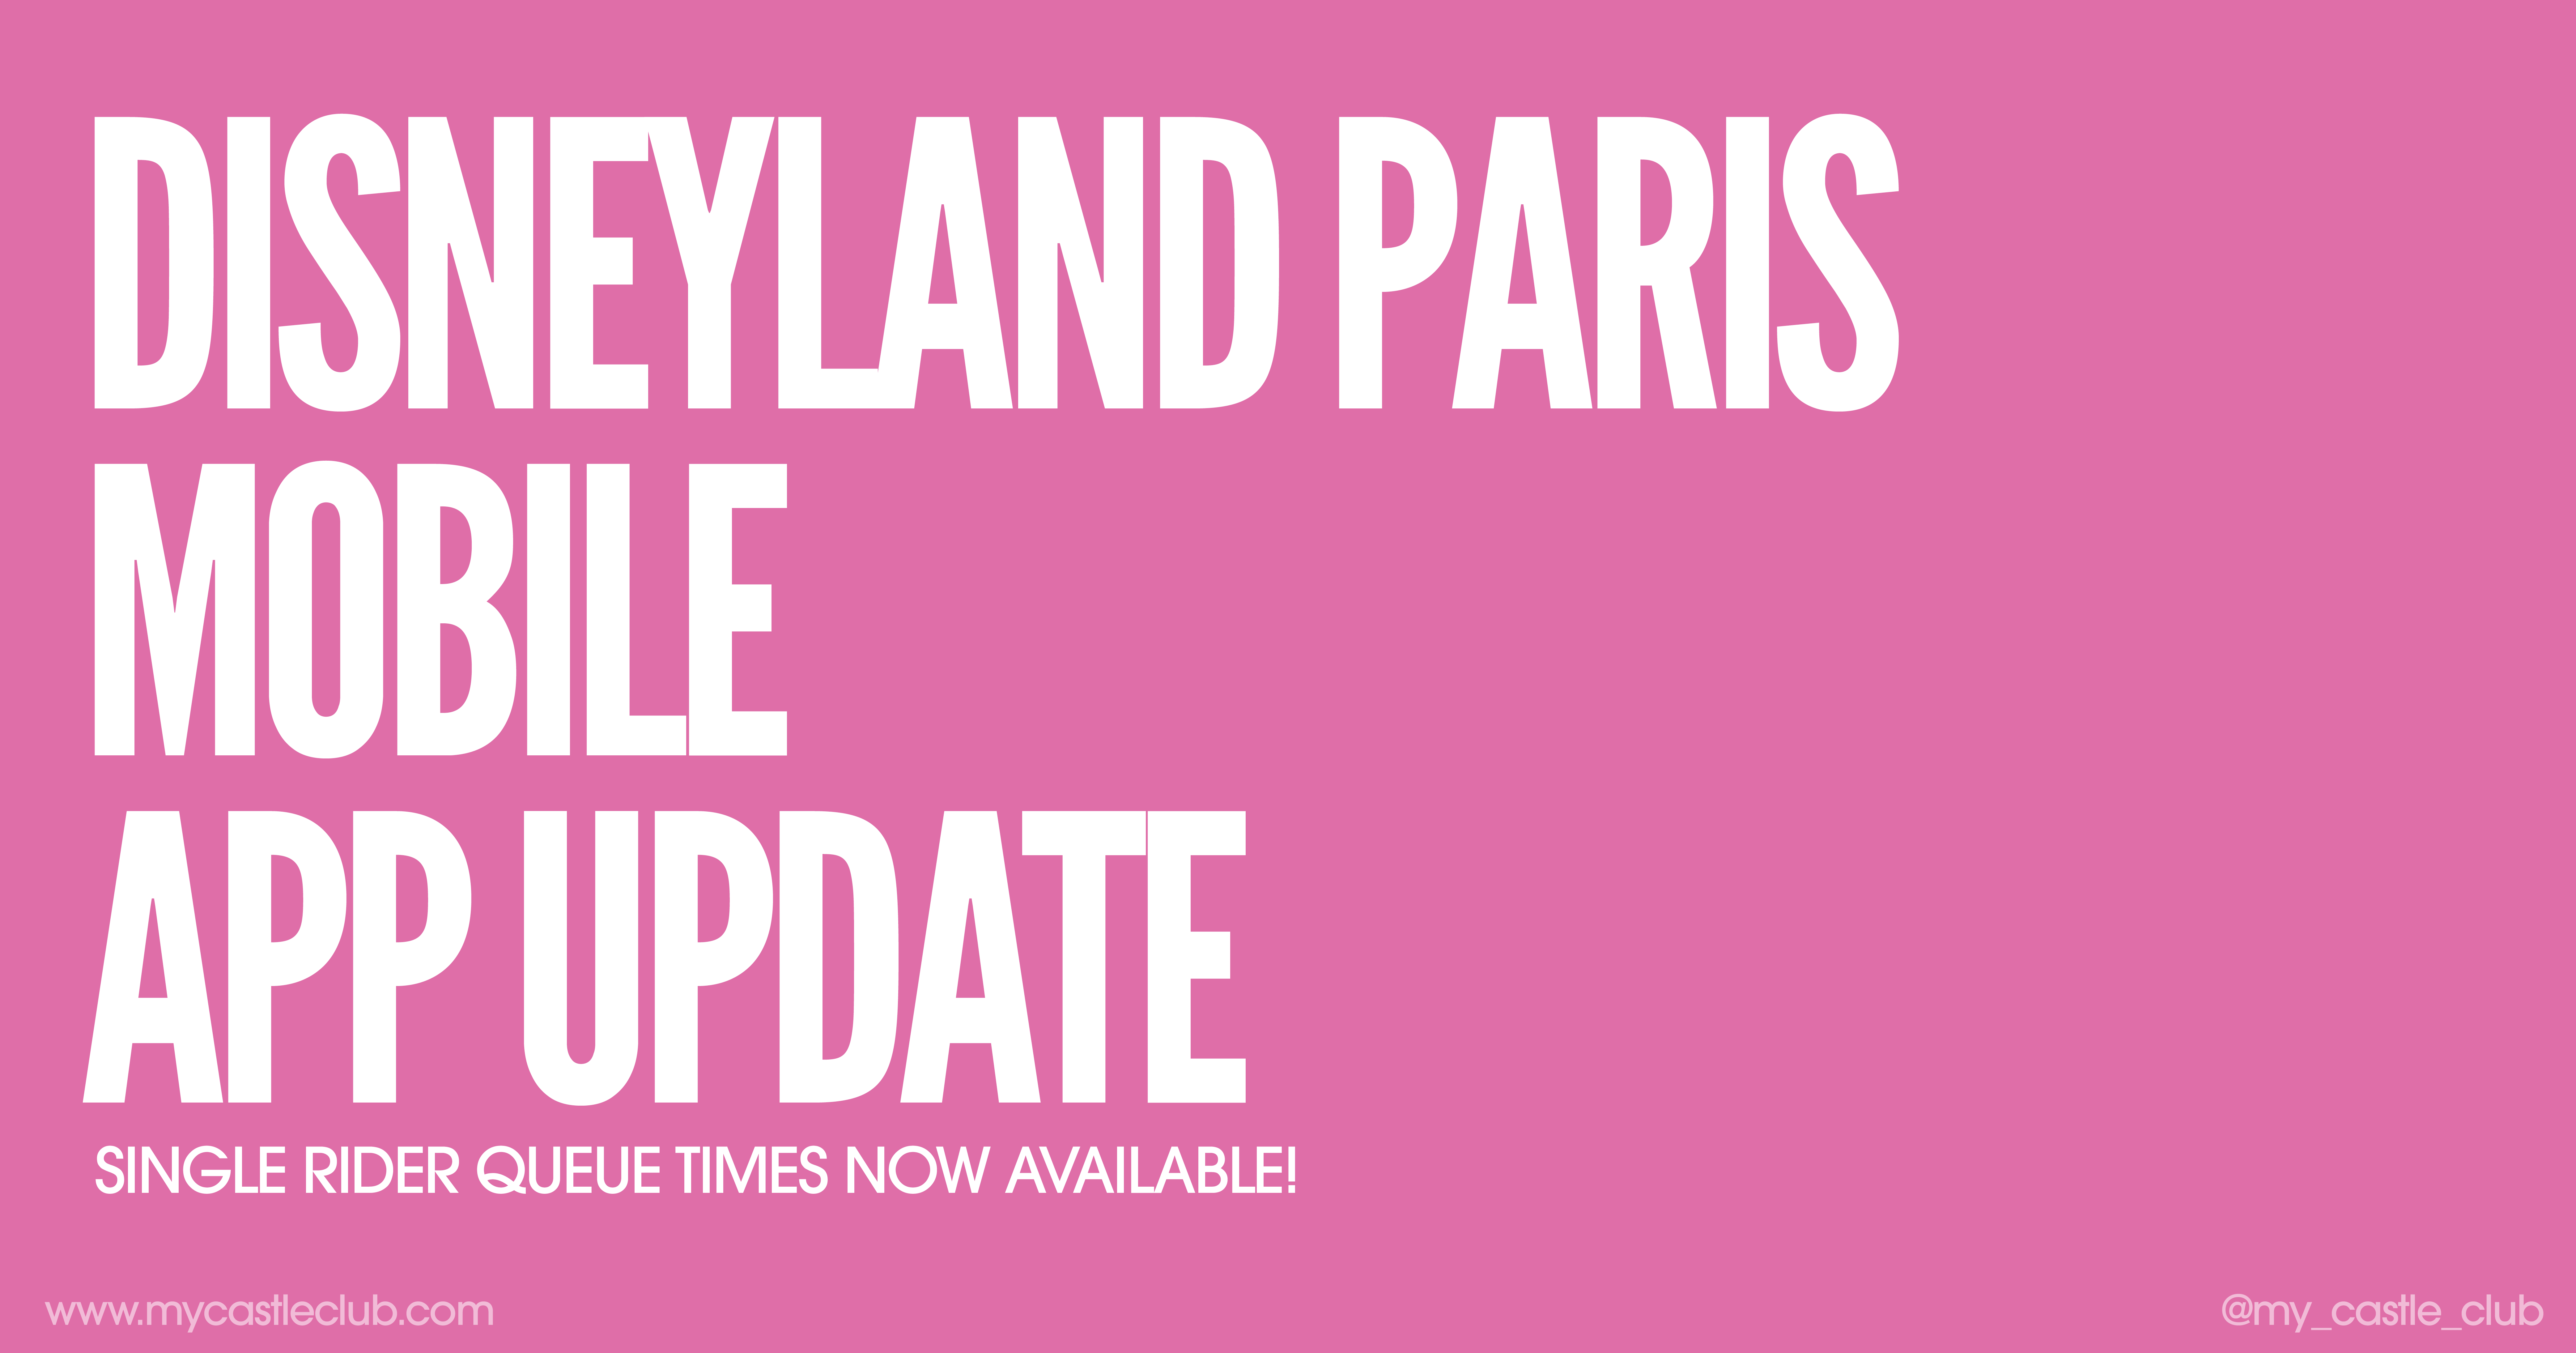 Disneyland Paris Mobile App Update: Single Rider Queue Times!